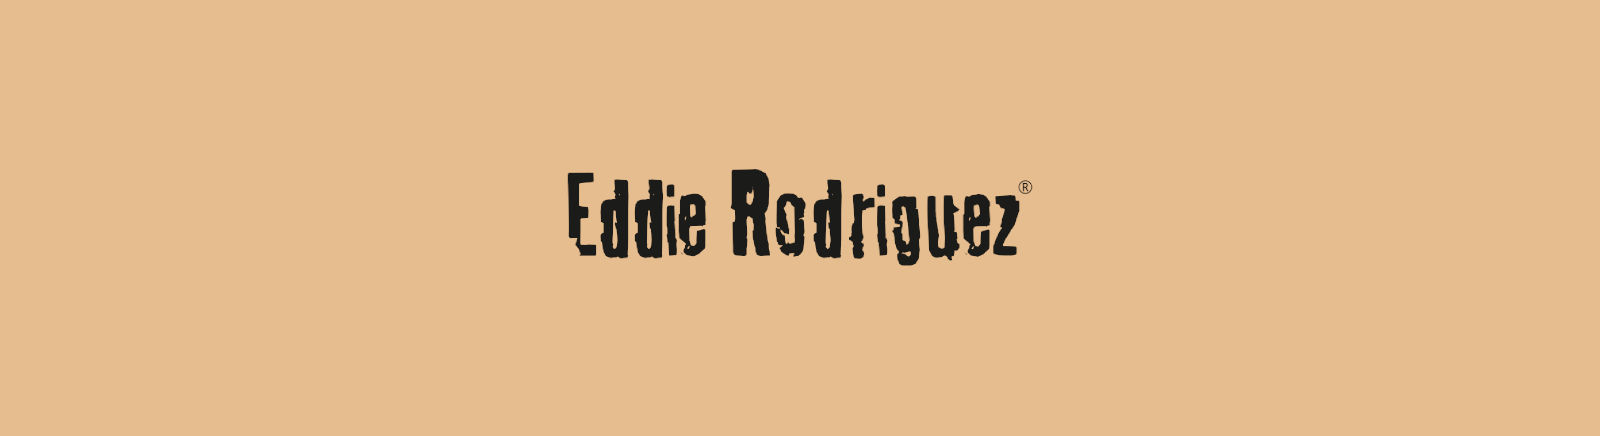 Eddie Rodriguez Schuhe &#9658; jetzt online kaufen bei Prange